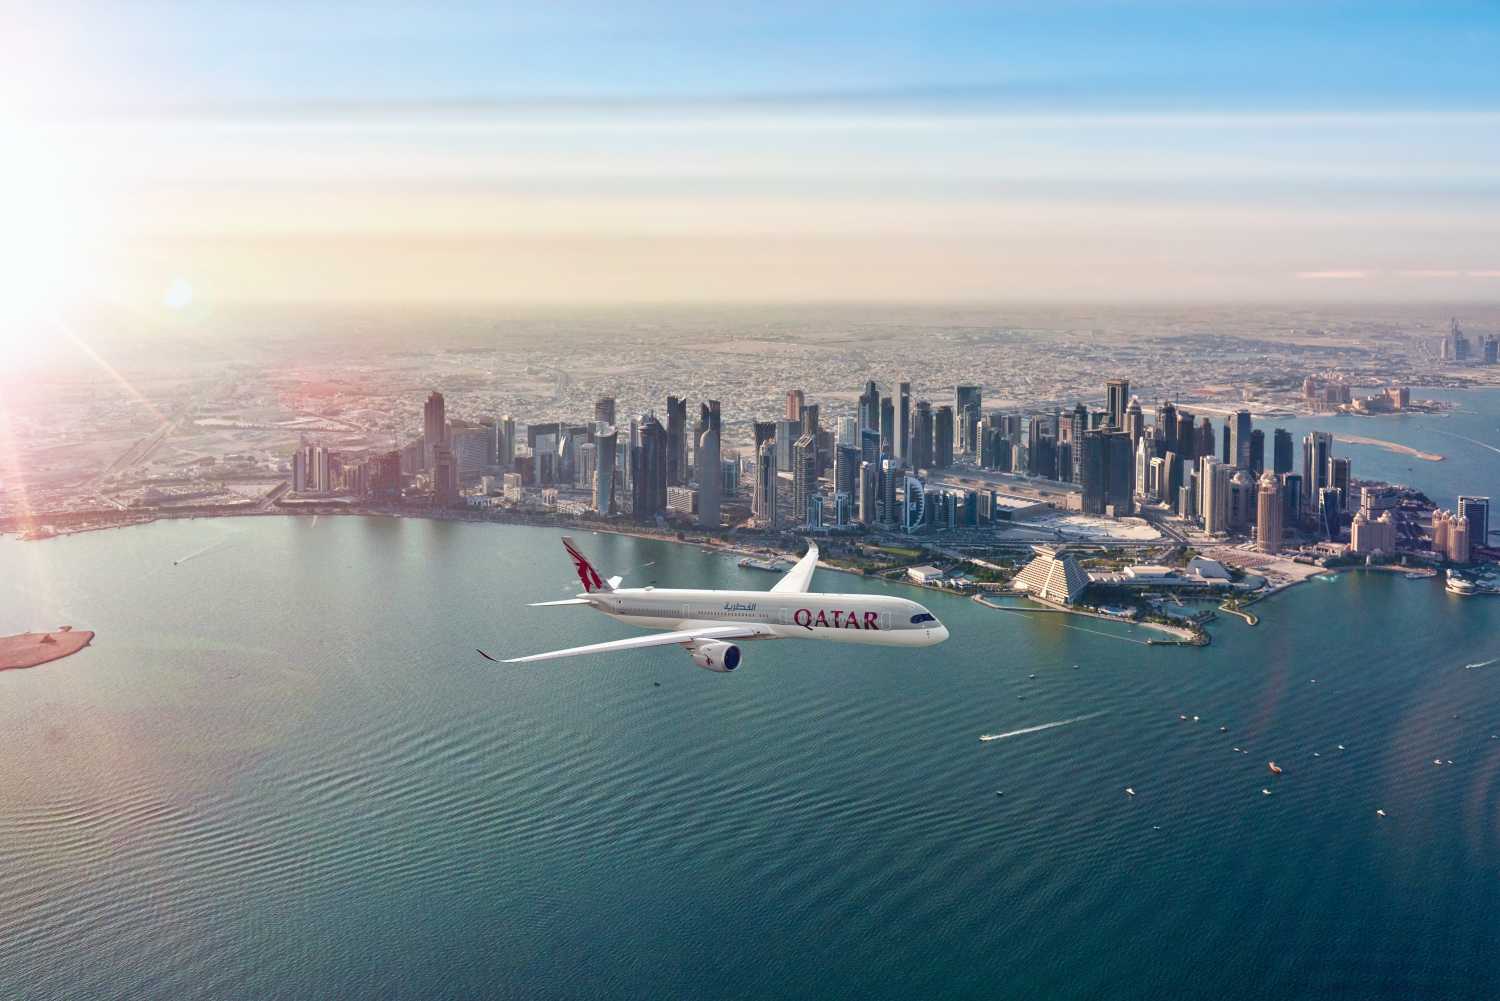 Qatar Airways Operational Update Wednesday 25 March 2020